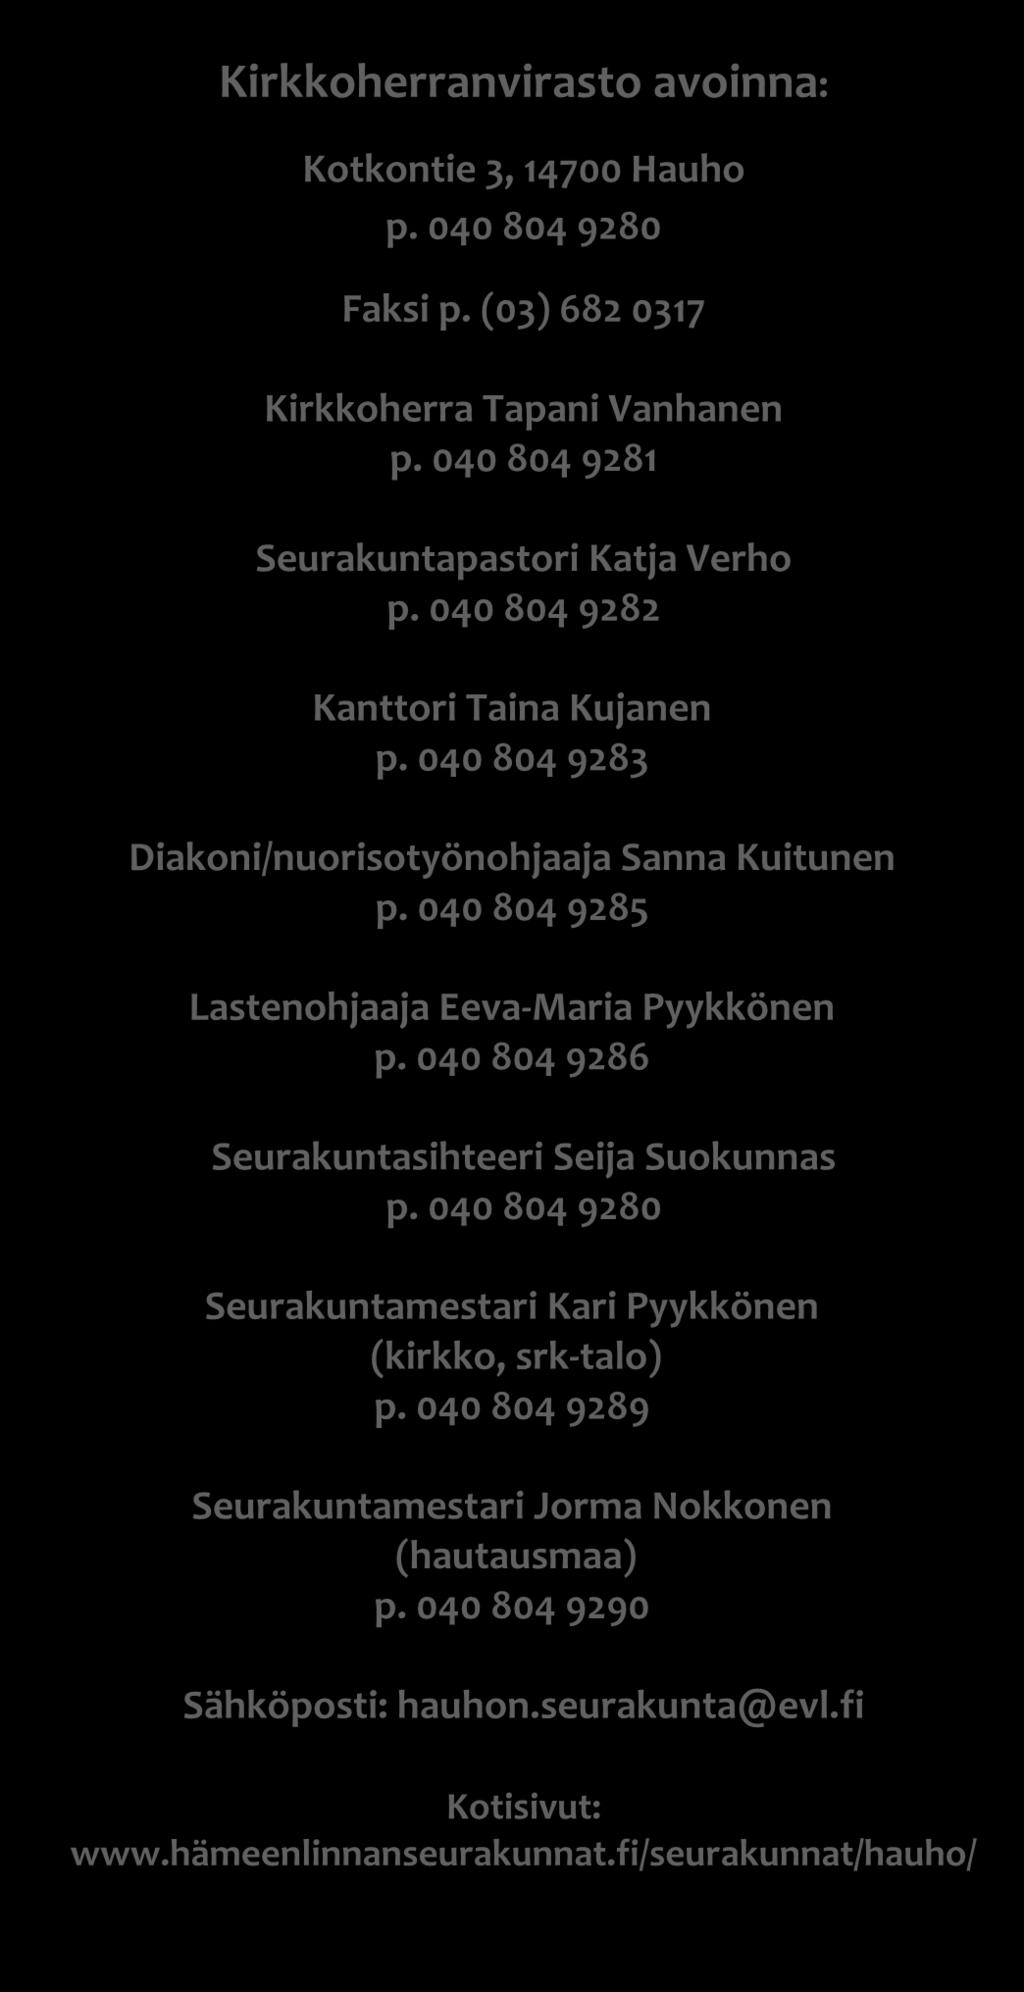 040 804 9285 Lastenohjaaja Eeva-Maria Pyykkönen p. 040 804 9286 Seurakuntasihteeri Seija Suokunnas p.